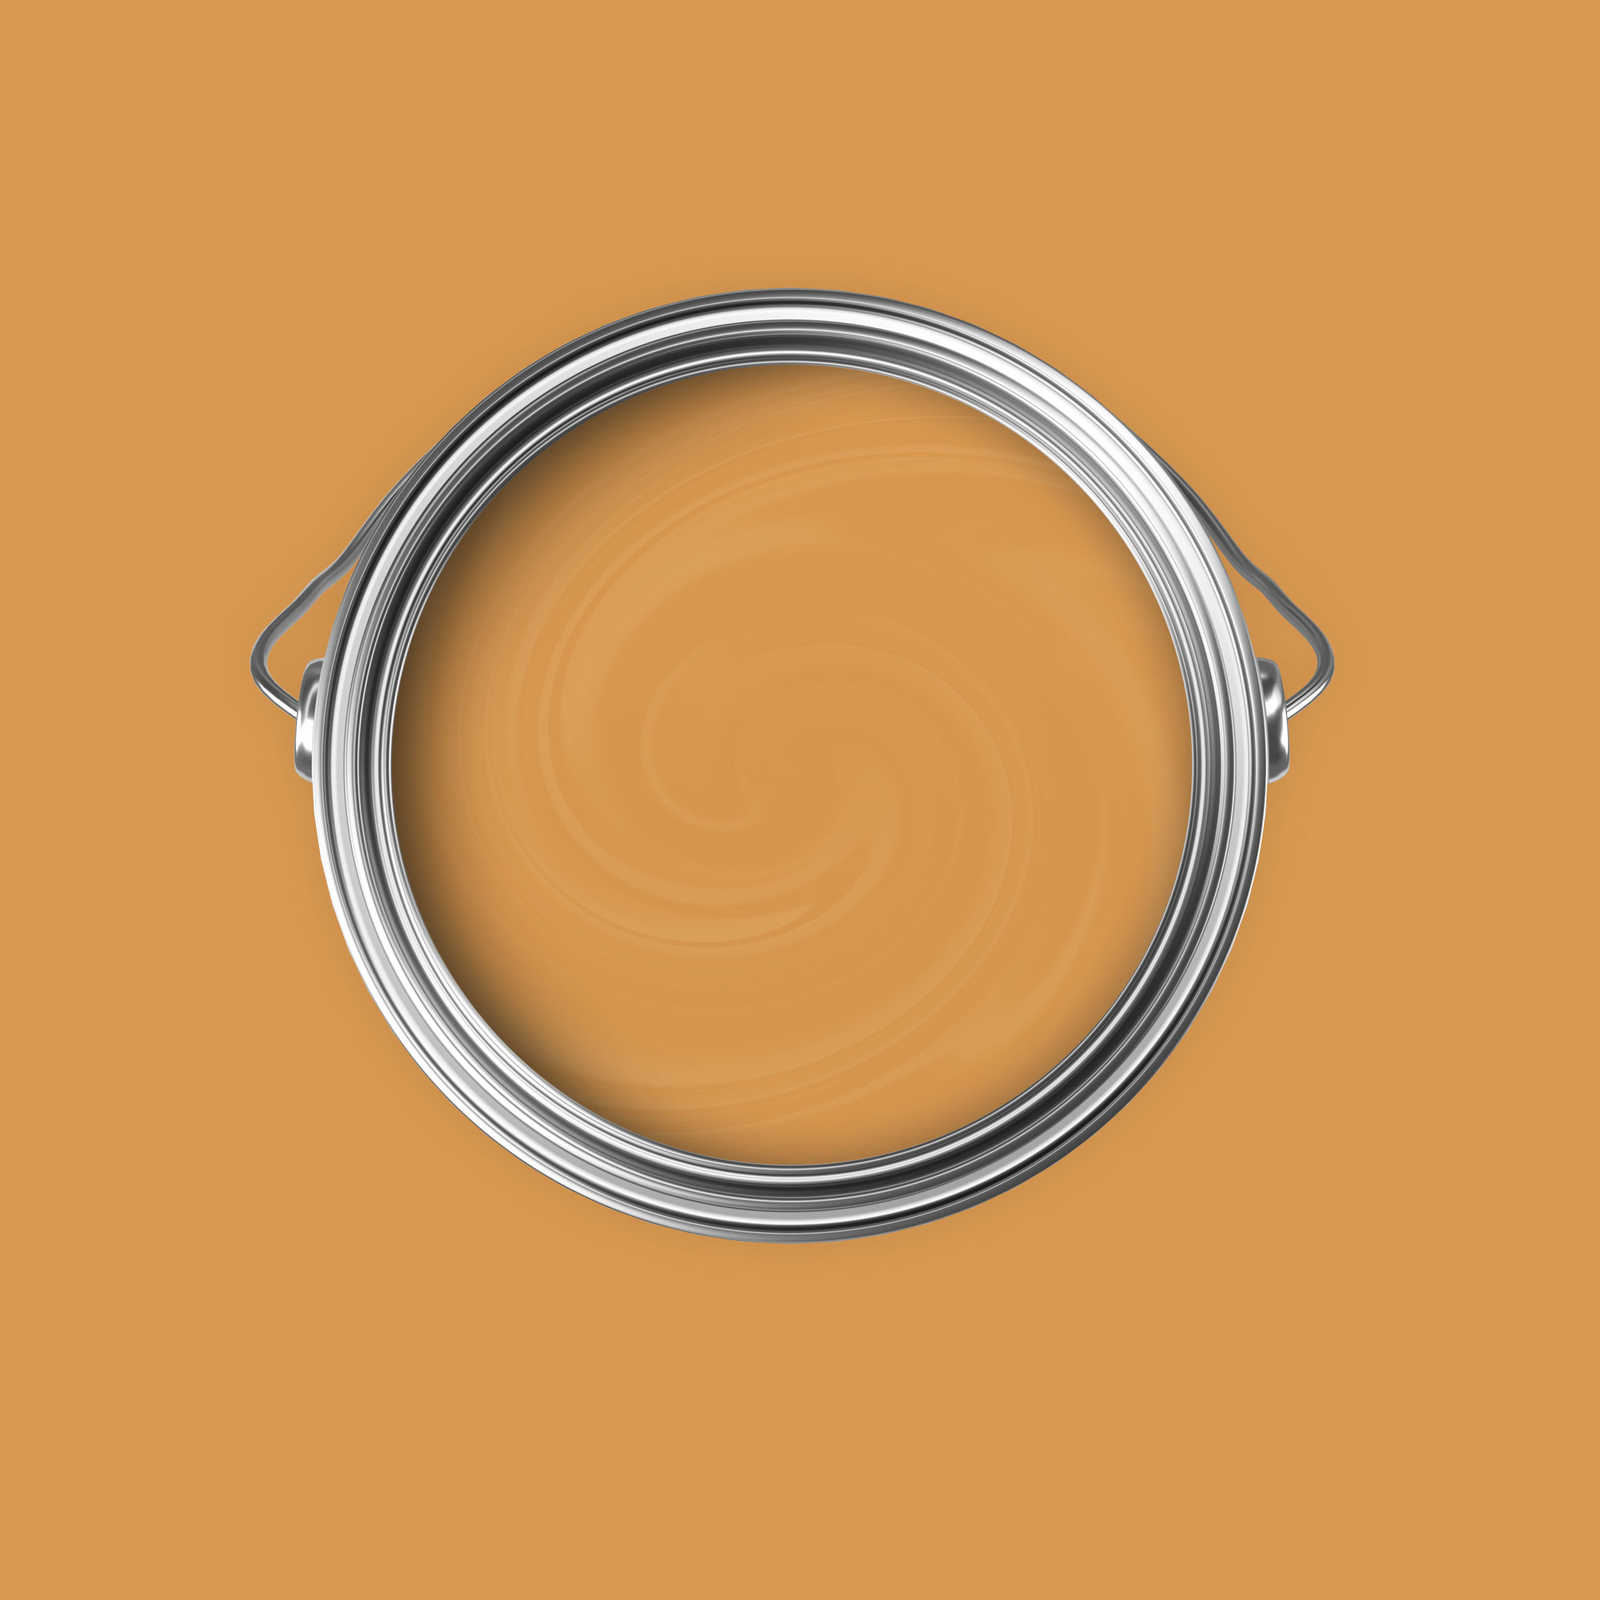             Premium Wandfarbe warmherziges Orange »Beige Orange/Sassy Saffron« NW813 – 5 Liter
        